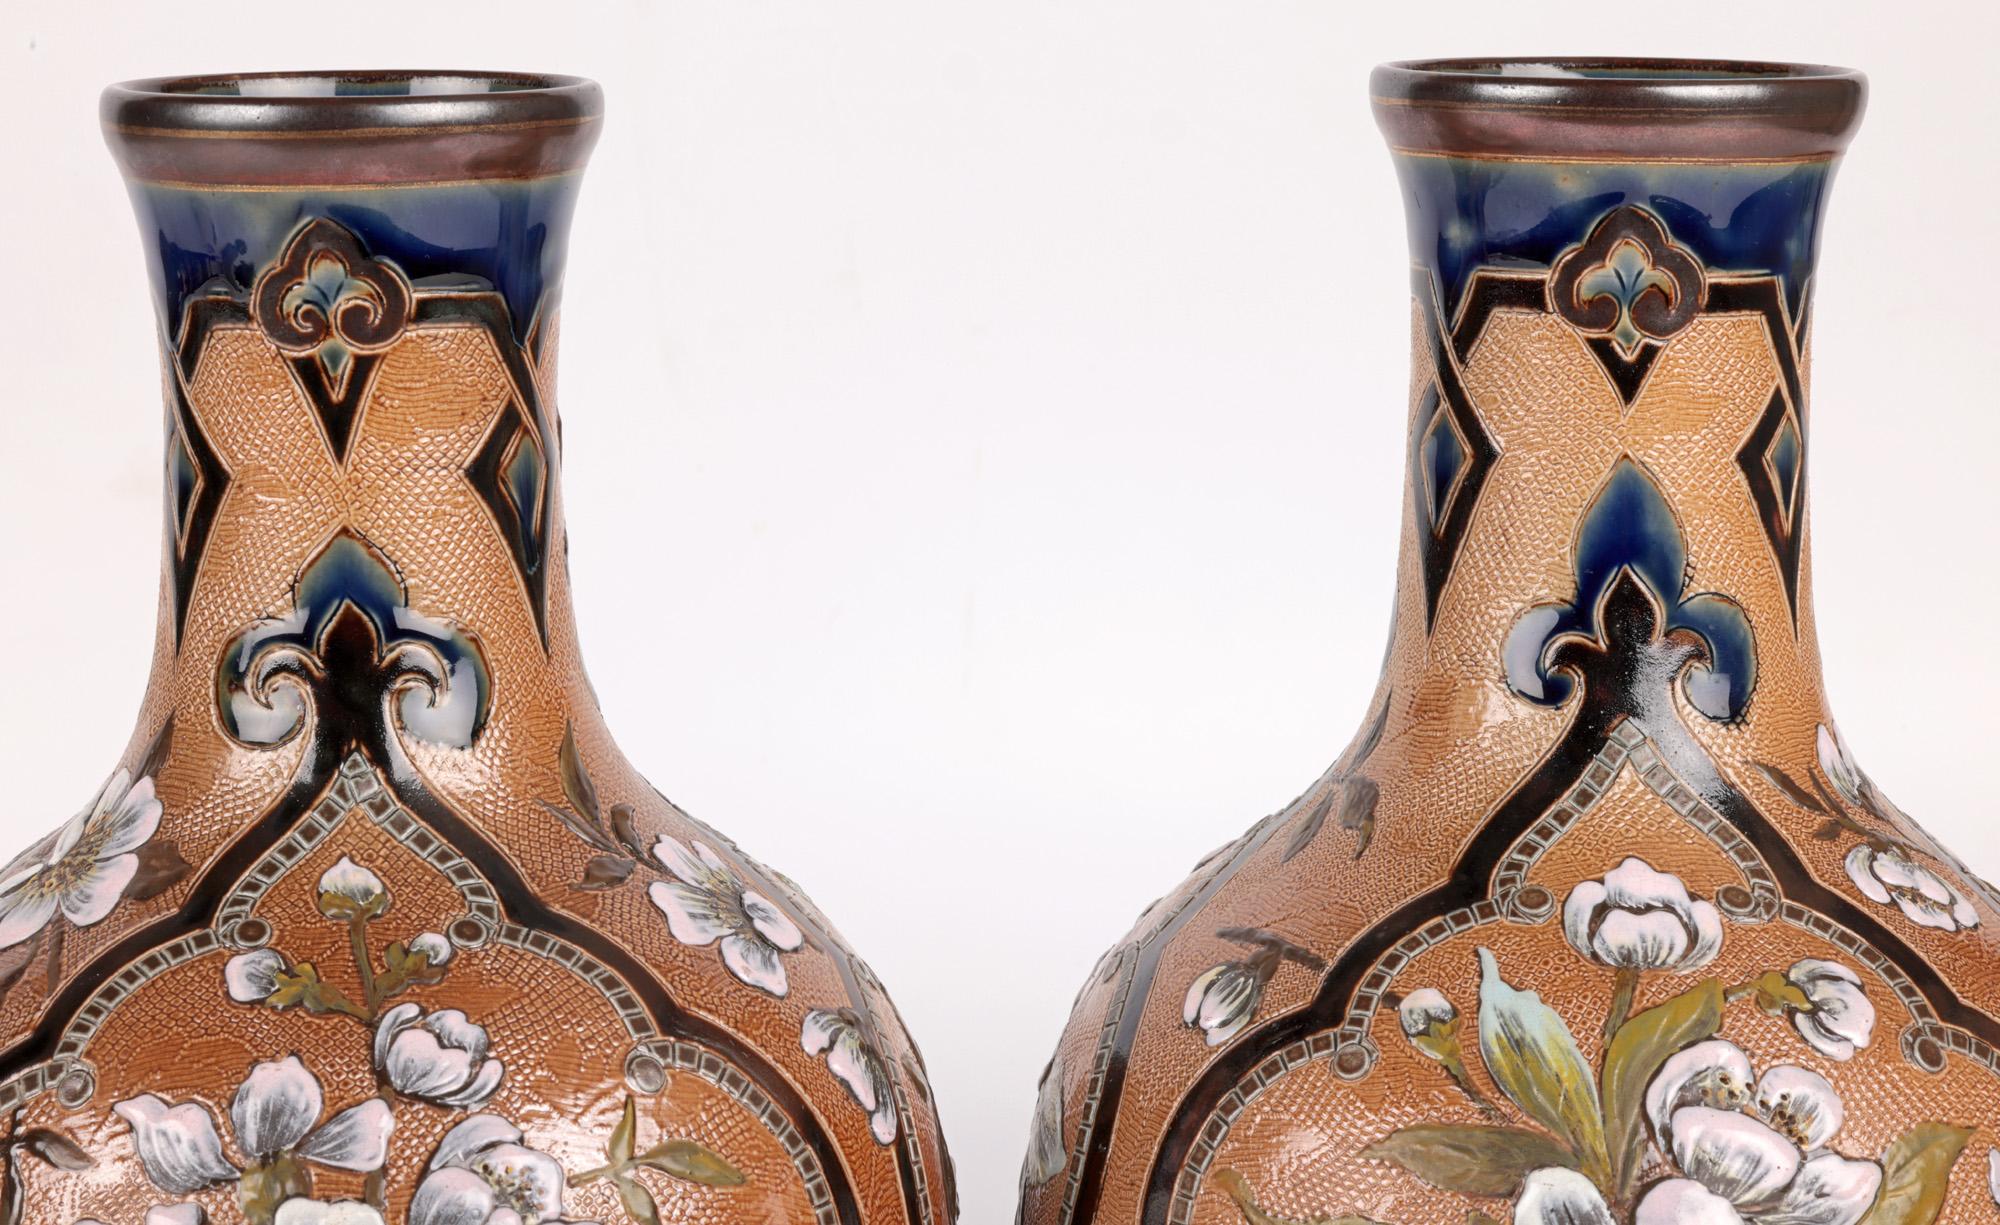 Une grande et impressionnante paire de vases Doulton Lambeth Slaters peints en pâte-sur-pâte et ornés de fleurs, réalisés par la célèbre designer et décoratrice Frances E Lee et datant d'environ 1885. Les grands vases en grès en forme de bouteille